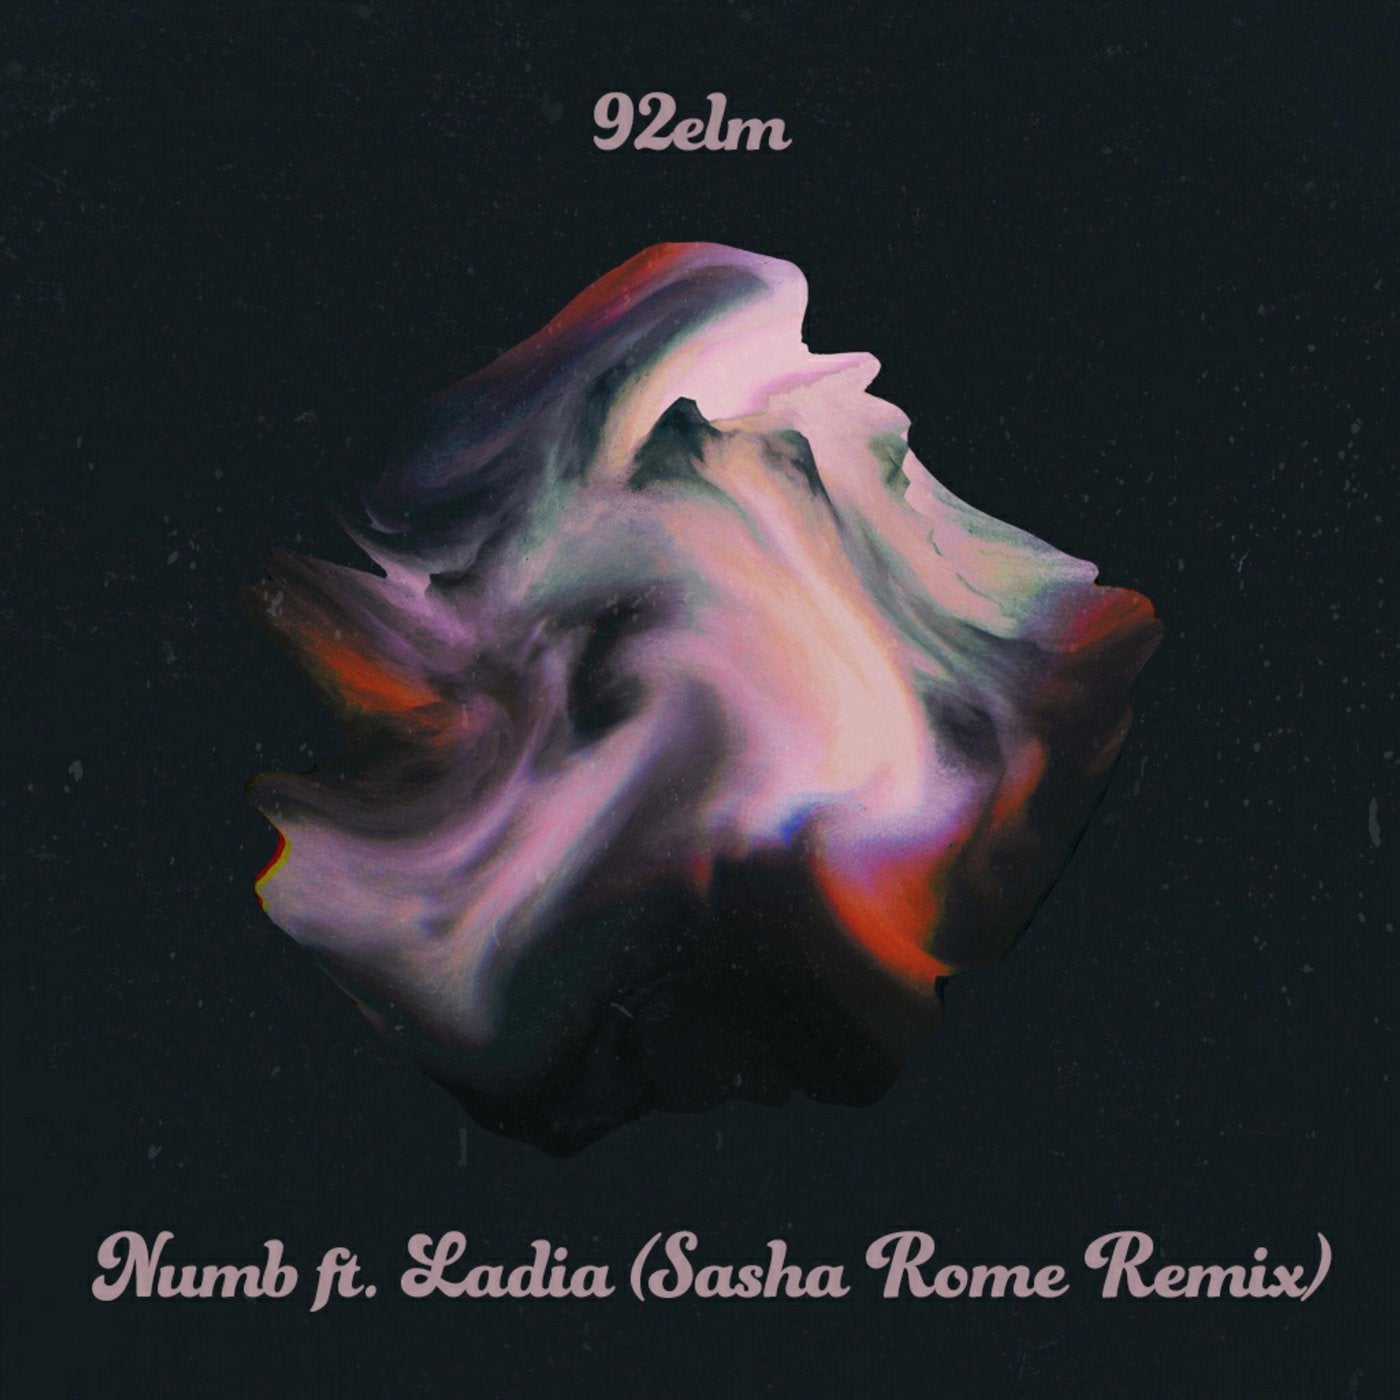 Numb (Sasha Rome Remix)